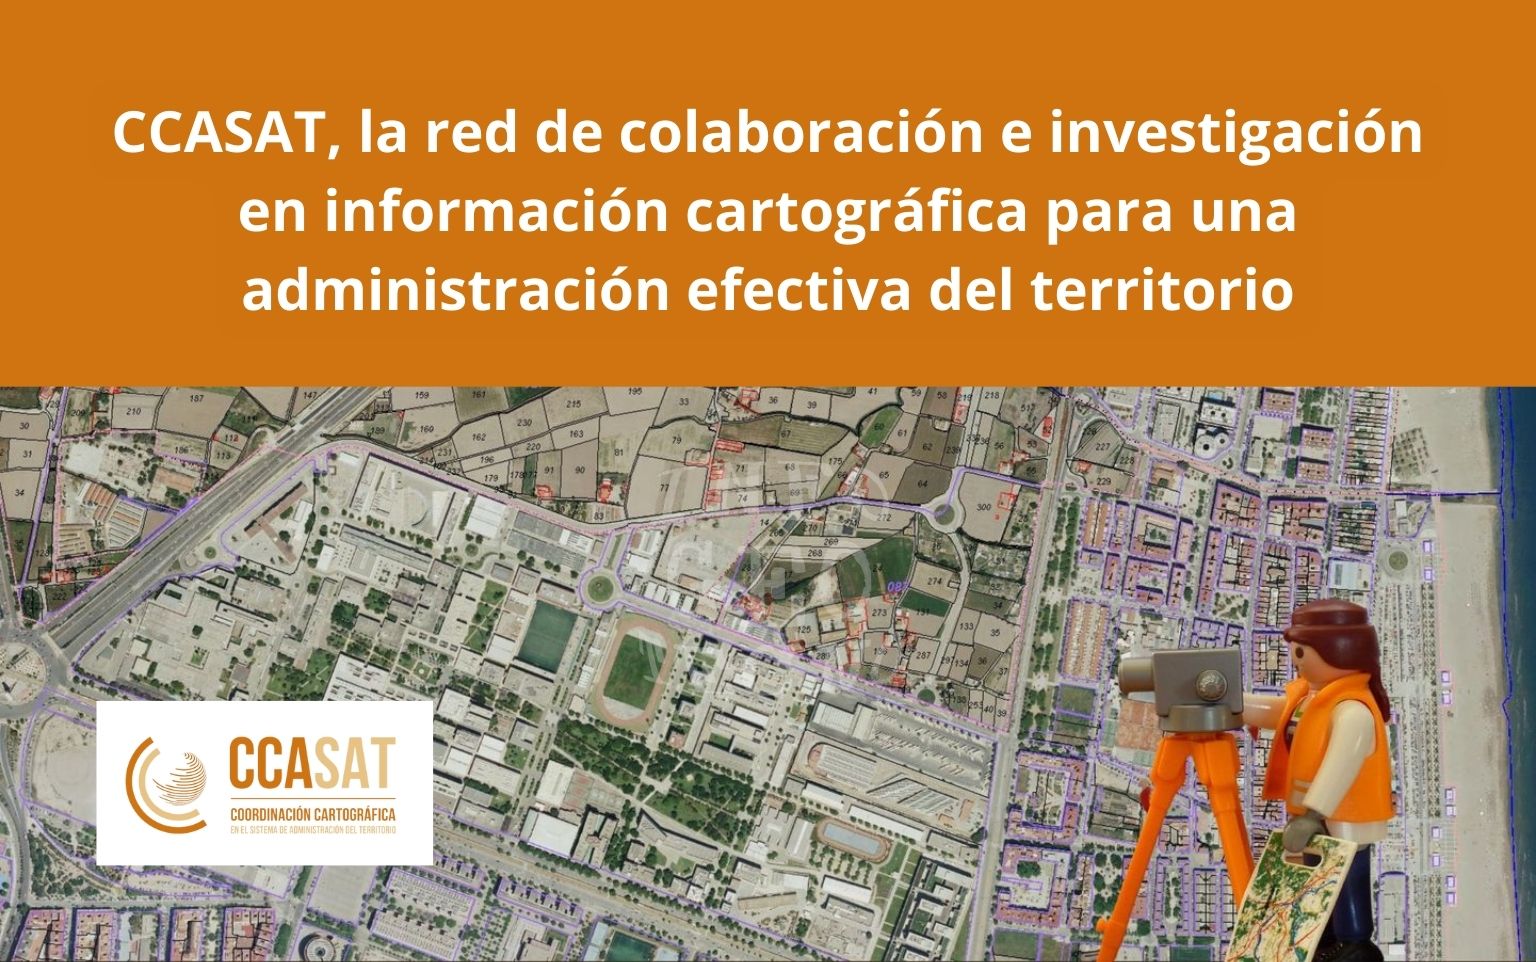 Lanzamiento de la web de CCASAT, la red de colaboración e investigación en información cartográfica para una administración efectiva del territorio